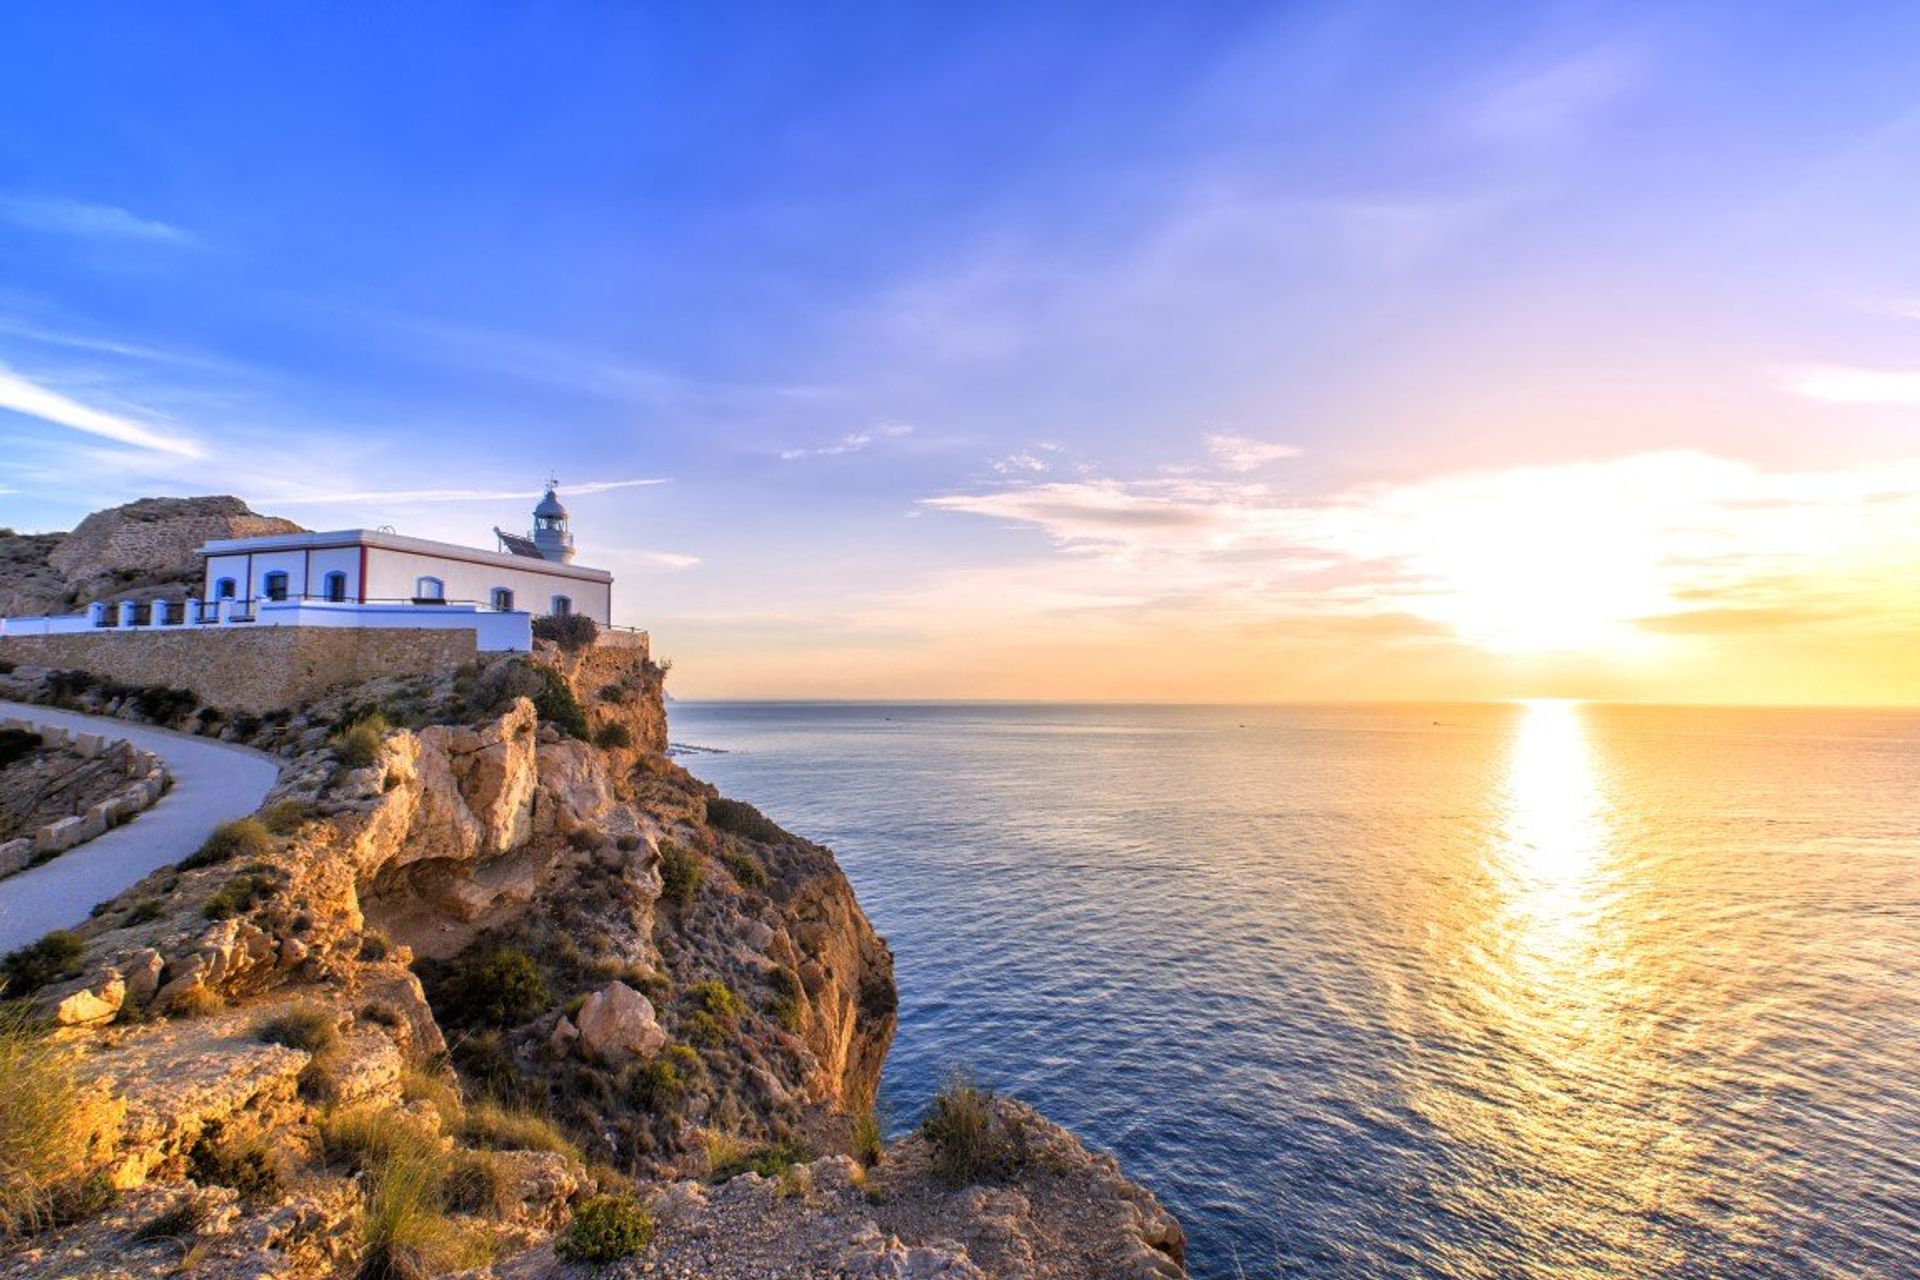 Watch the sun set from Albir beach lighthouse overlooking the Mediterranean